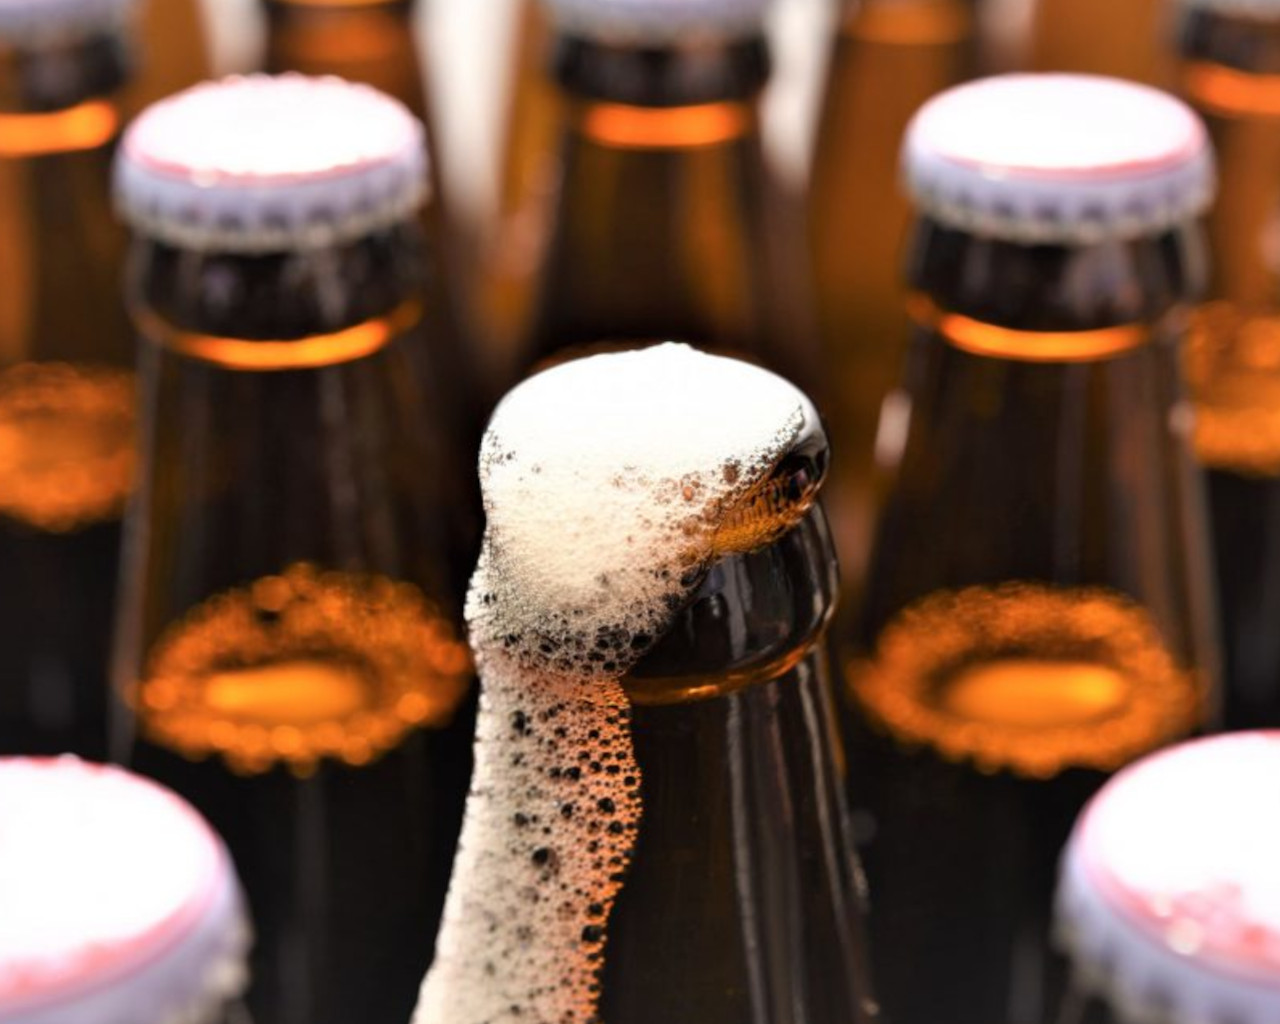 μπυρα,μπυρα χωρις θερμιδες,μπυρα χωρις αλκοολ,μπυρα μαρκες,μπυρα βεργινα,μπυρα μπουκαλια